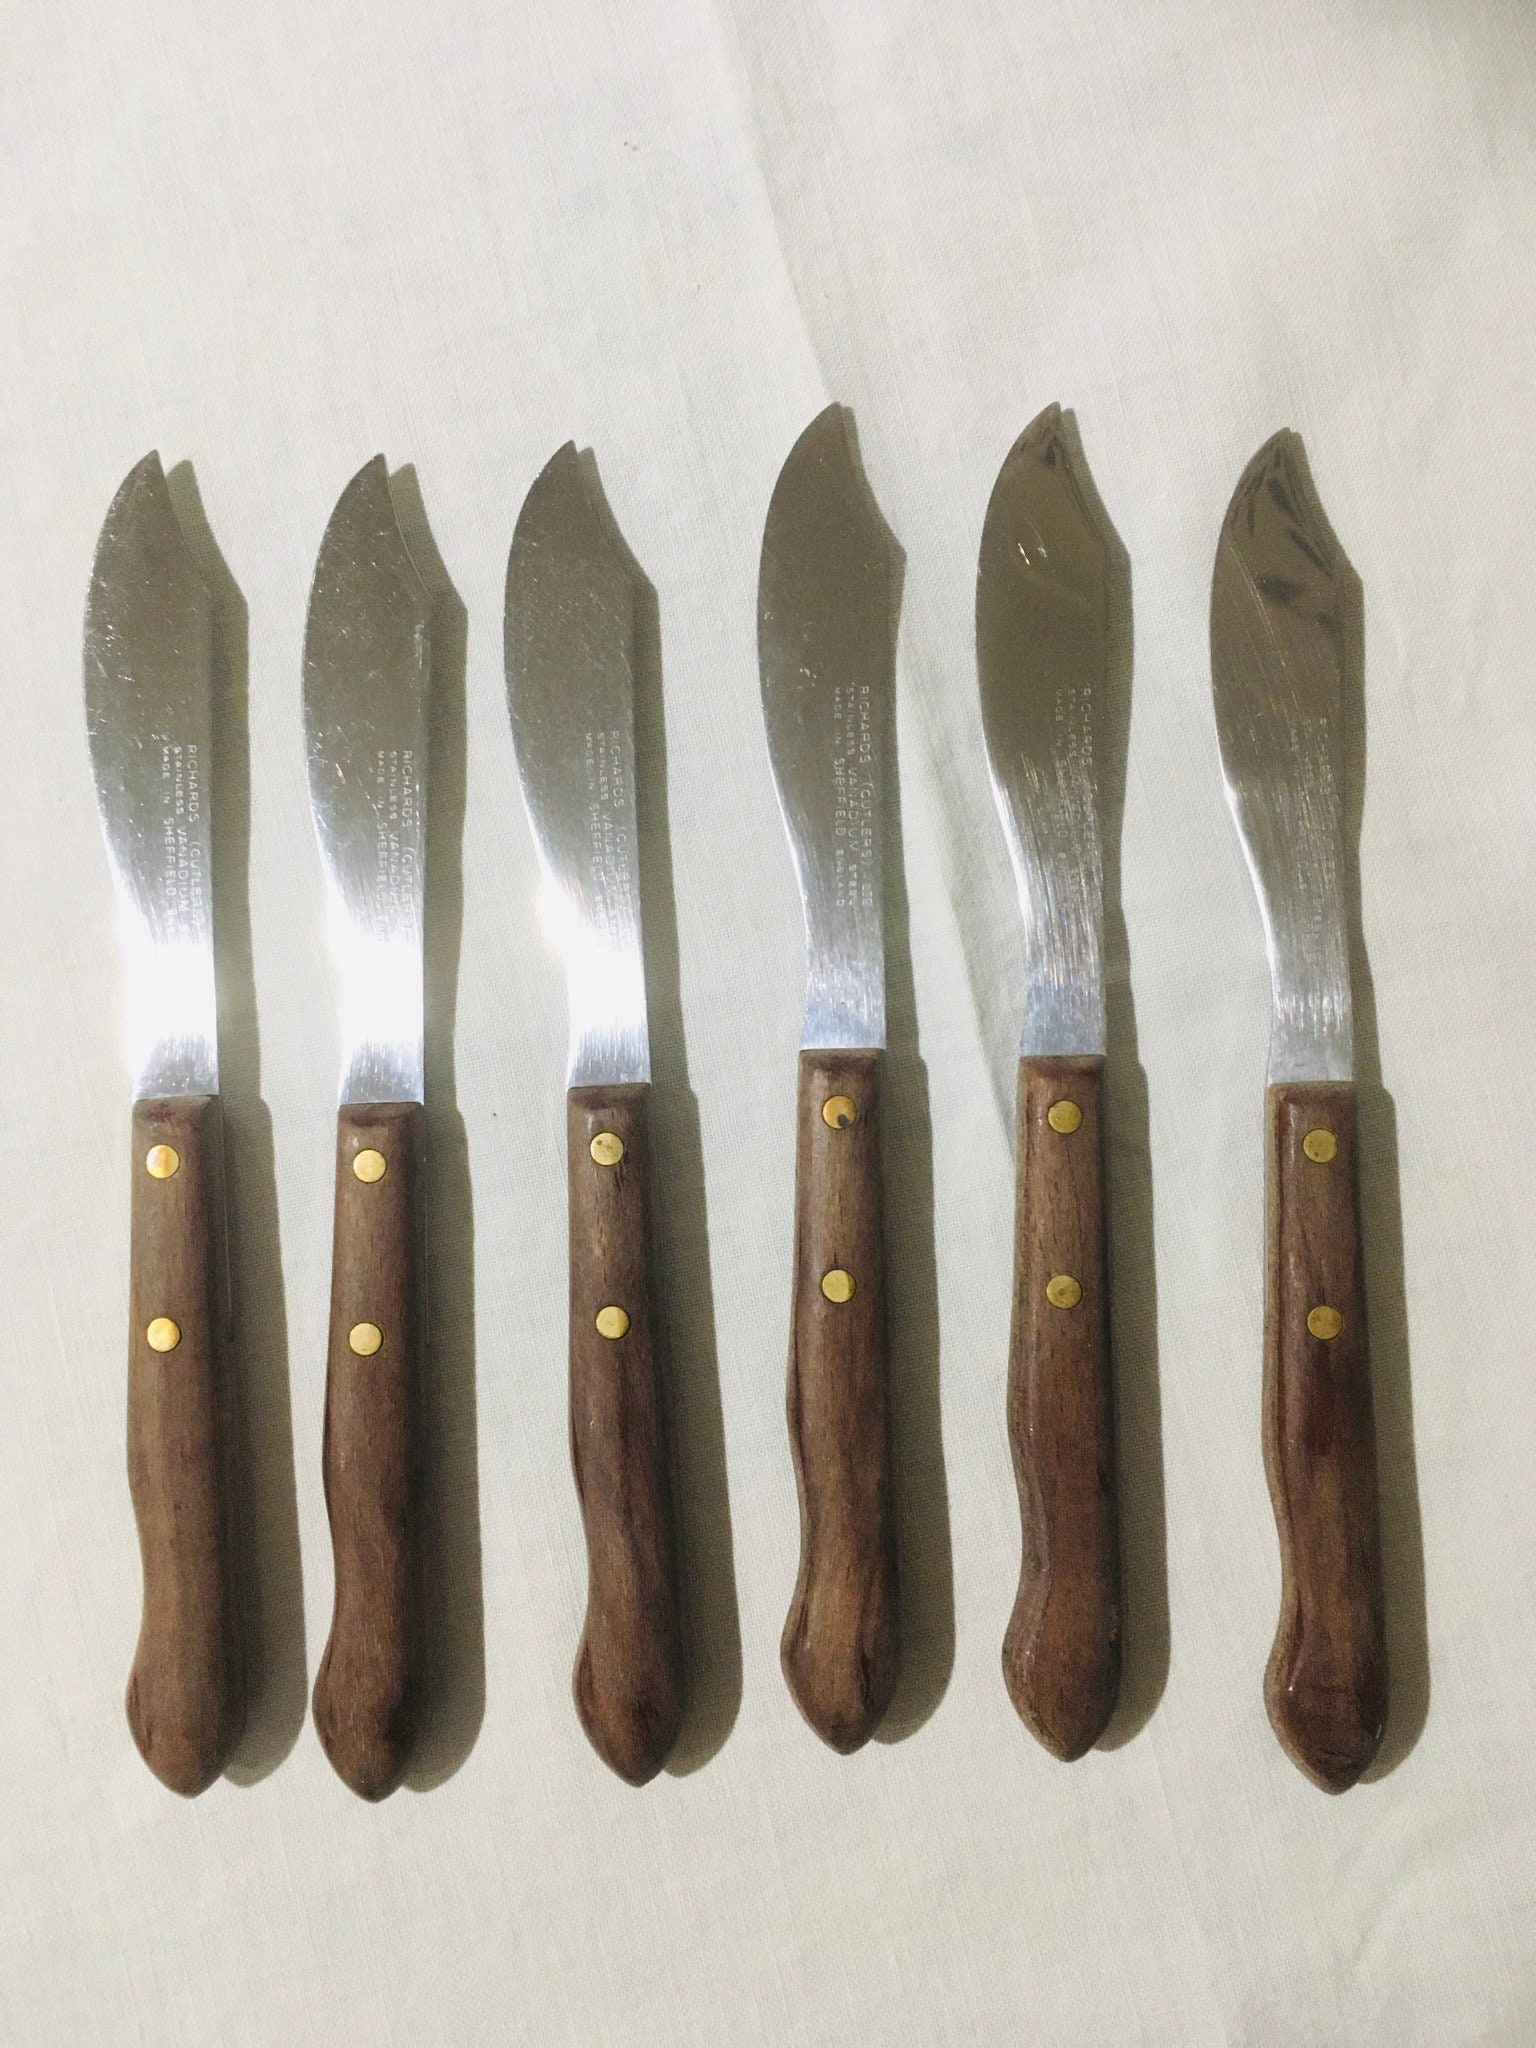 Vintage Kitchen Knife Storage Kler-vue Knife Rack by A E Rosenberg